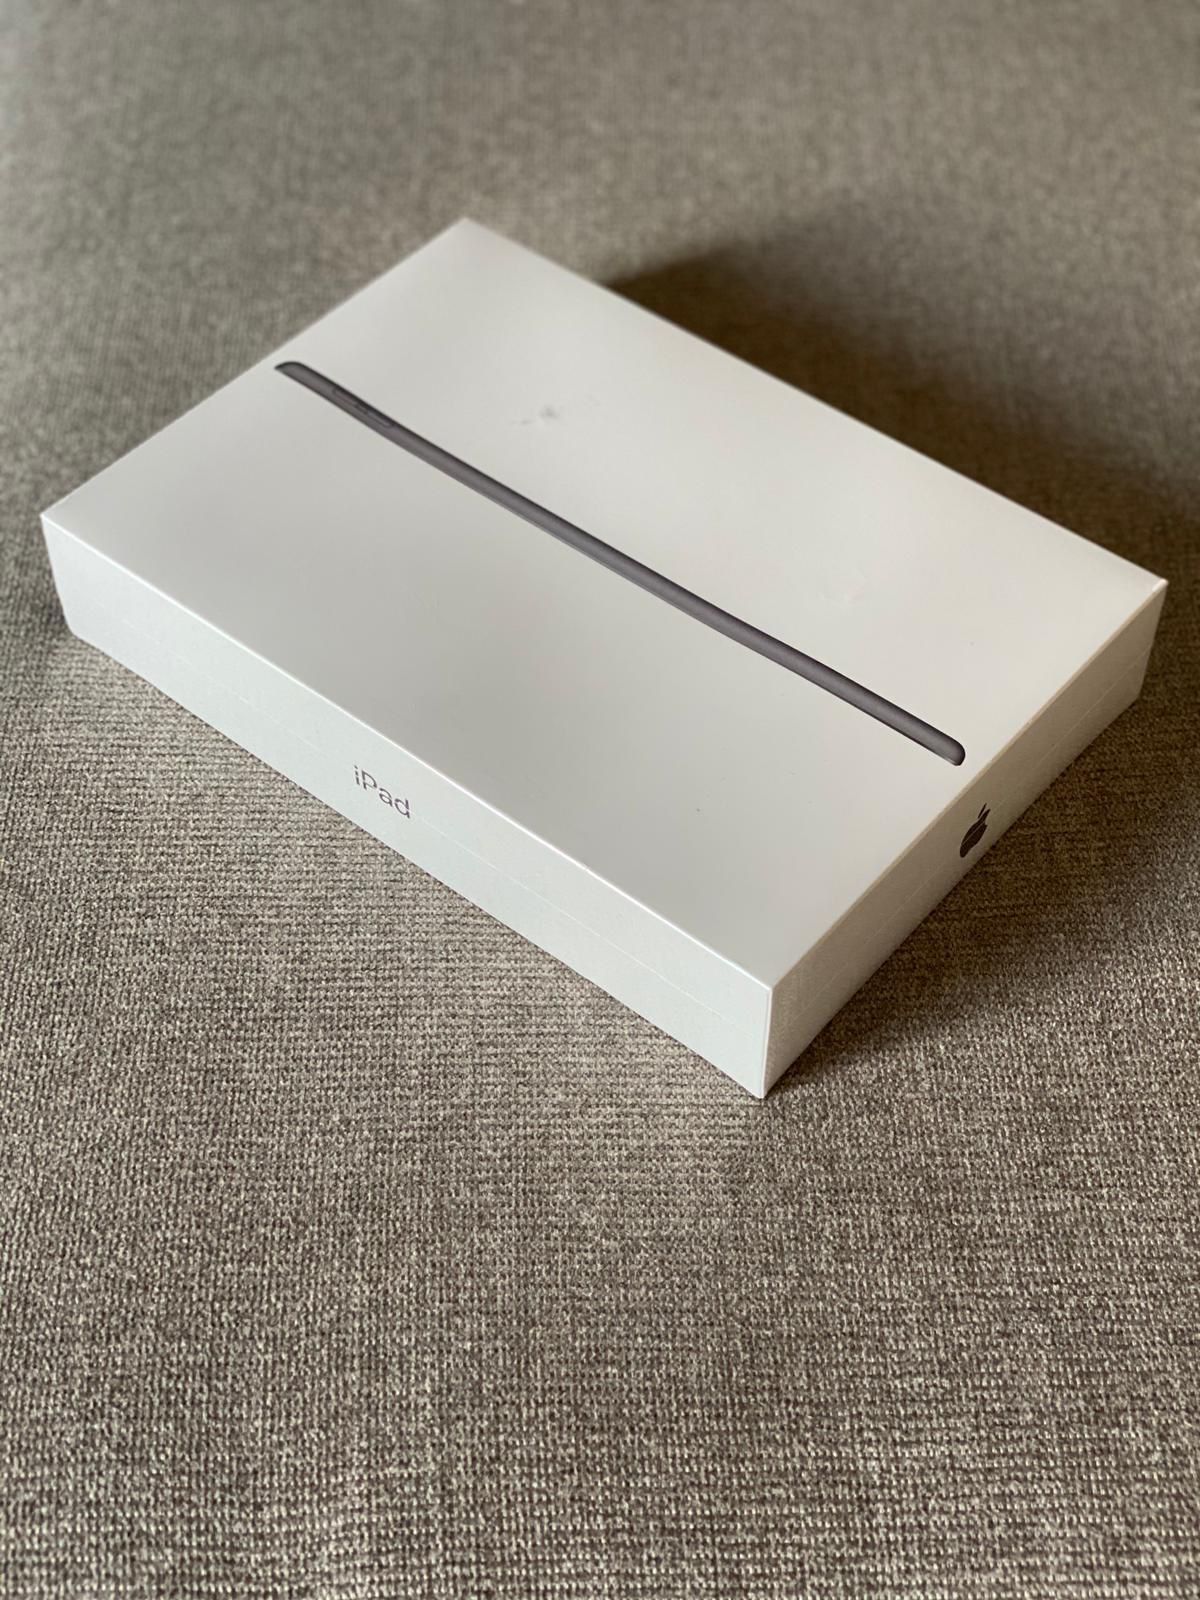 Apple 10.2” iPad 7th Gen (Late 2019, 32 GB, Wi-Fi, Space Gray)